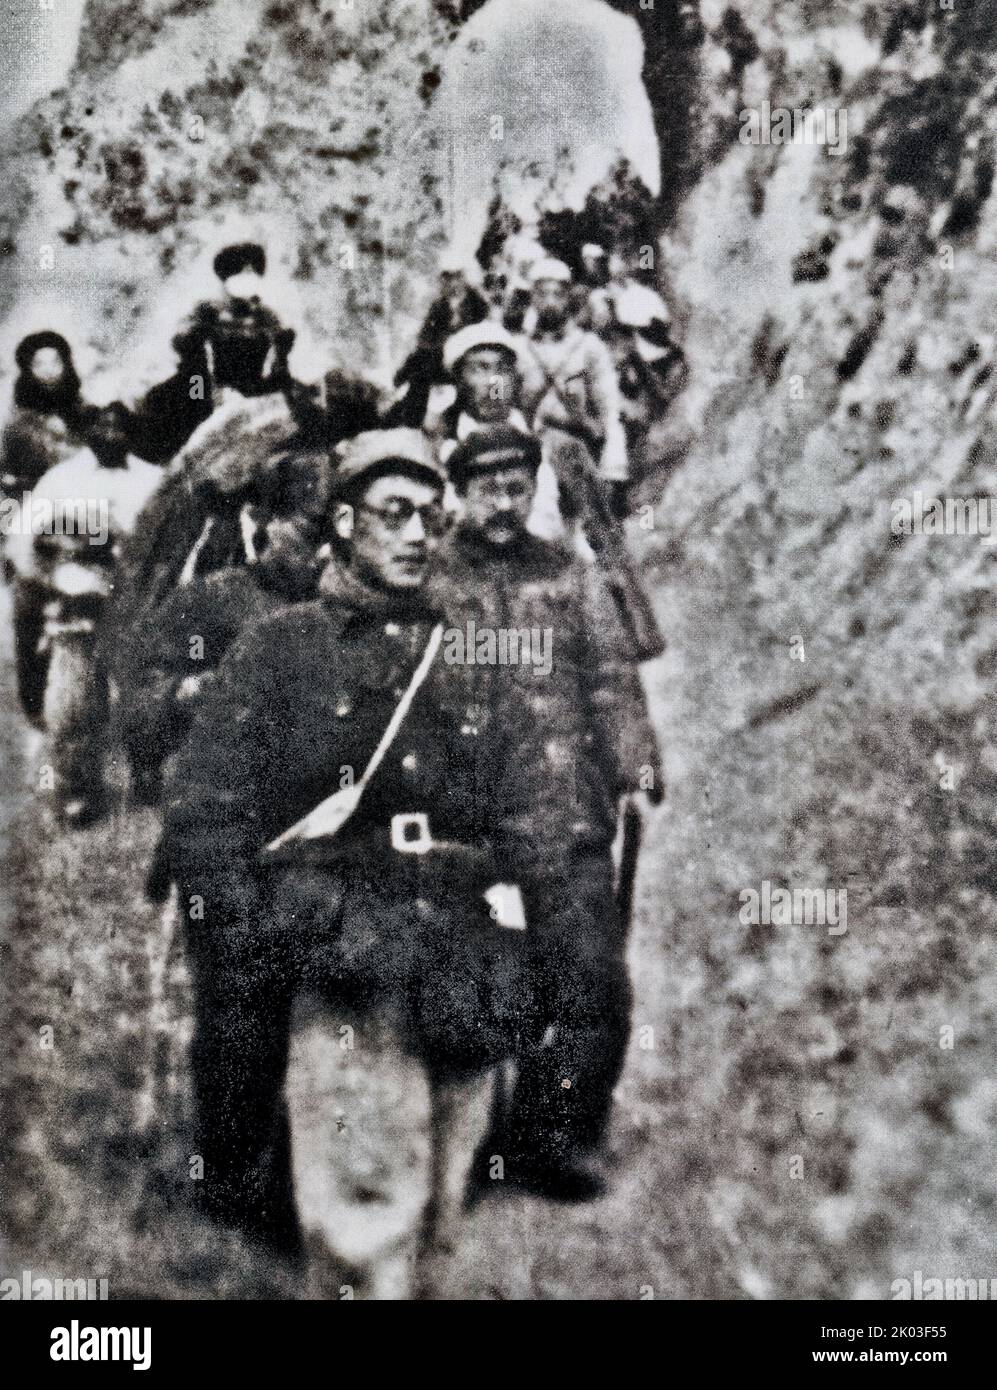 La longue Marche était une retraite militaire entreprise par l'Armée rouge du Parti communiste de Chine (PCC), précurseur de l'Armée populaire de libération, pour échapper à la poursuite de l'Armée nationale du Parti nationaliste chinois, La plus célèbre a commencé dans la province de Jiangxi (Jiangxi) en octobre 1934 et s'est terminée dans la province de Shaanxi en octobre 1935. Banque D'Images